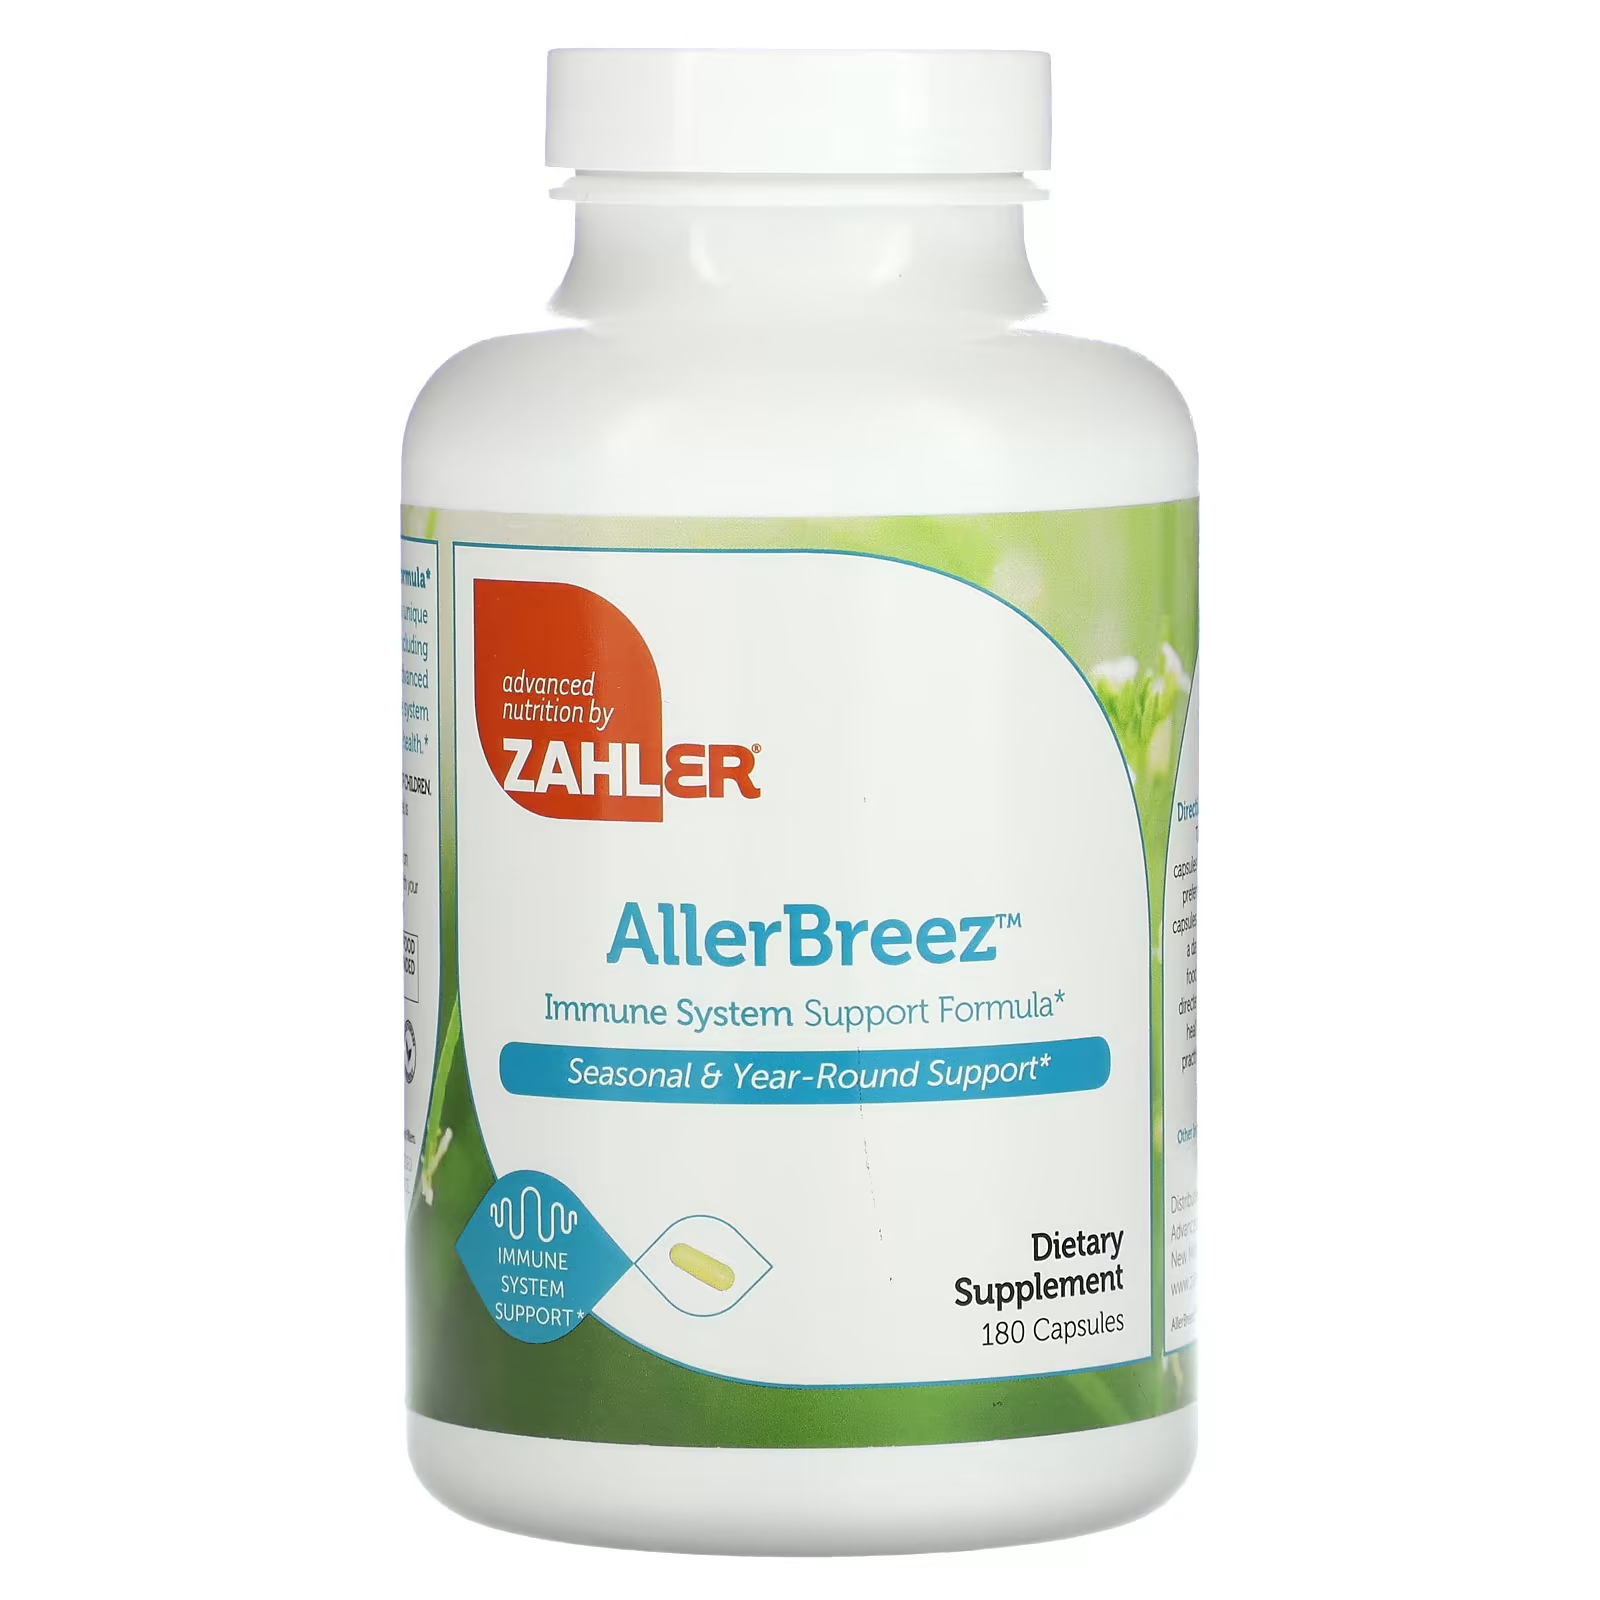 Пищевая добавка Zahler AllergBreeze формула поддержки иммунной системы, 180 капсул